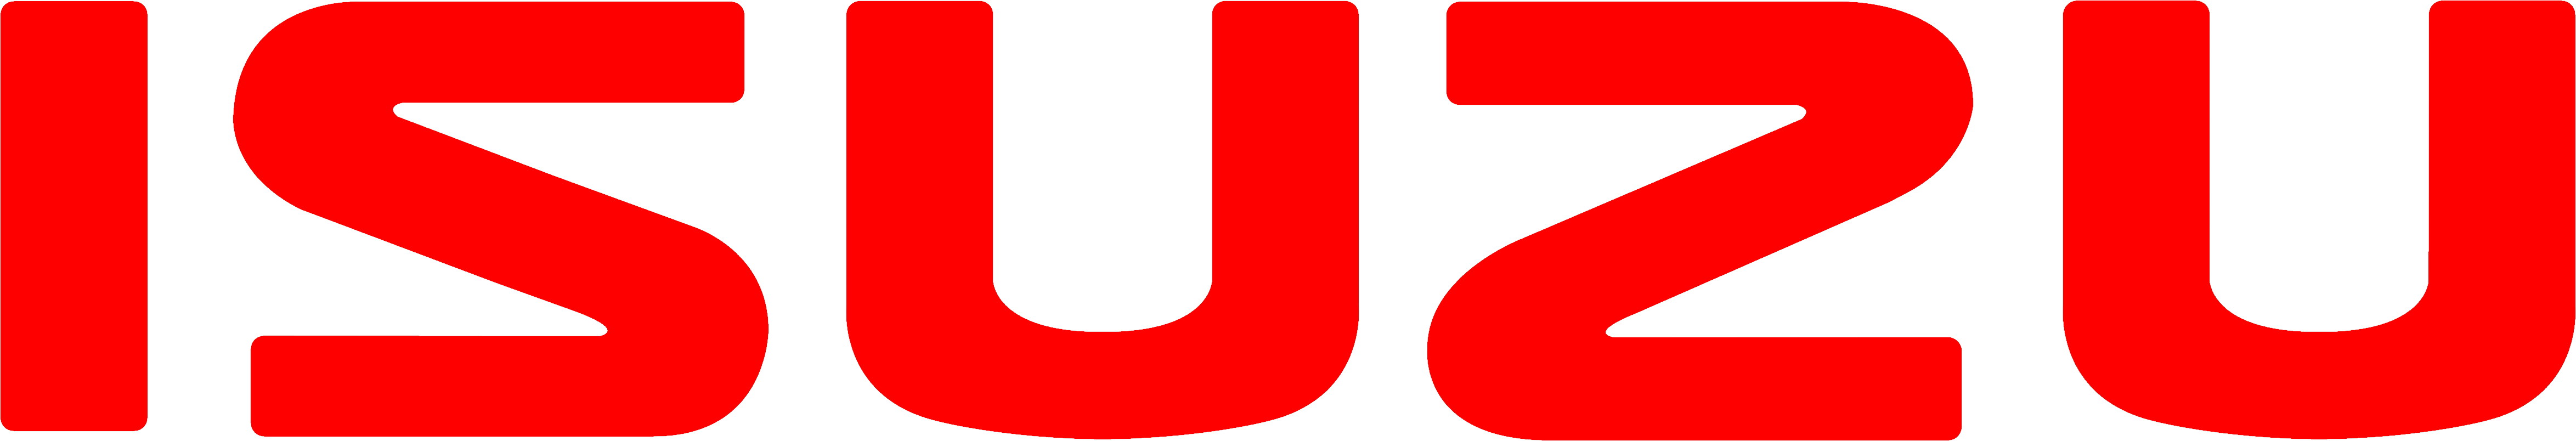 Logotipo da Isuzu